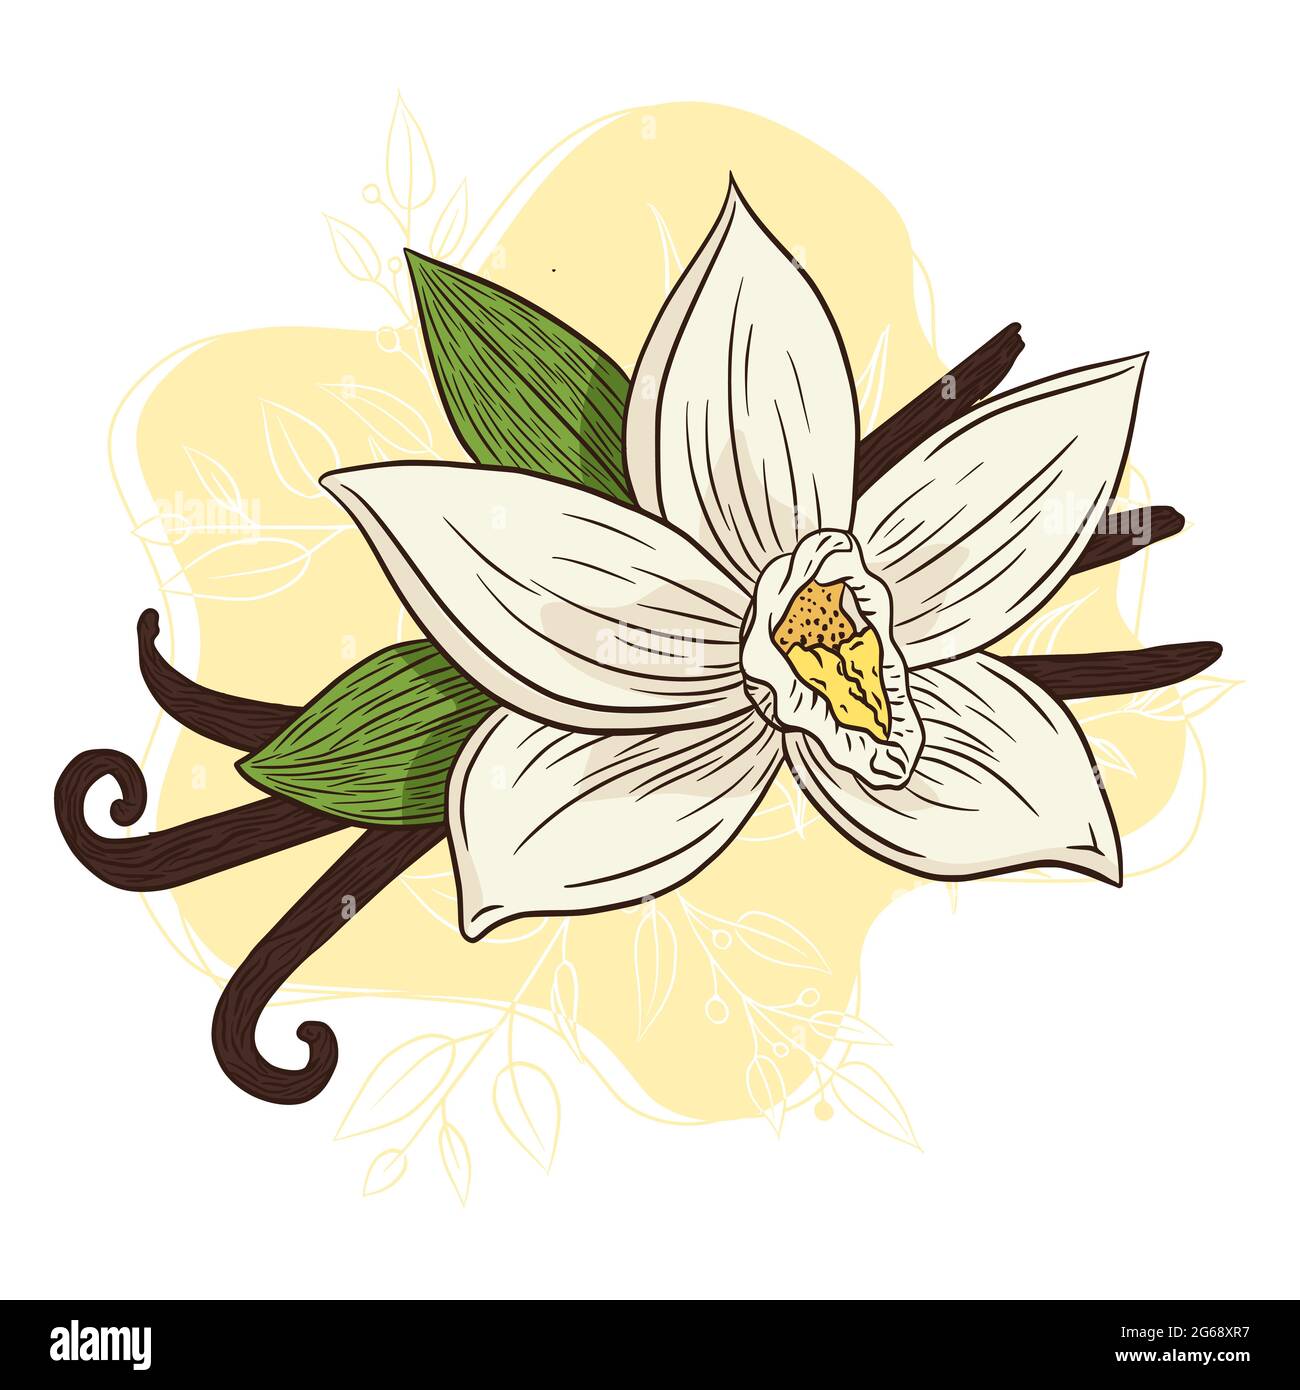 Trải nghiệm hương thơm Vanilla Blossom Illustration thơm ngon và tươi mới để cảm nhận sự thanh tịnh đến từ thiên nhiên. Với hình ảnh tươi trẻ và đầy màu sắc, bạn sẽ được đưa đến một thế giới của sự thư giãn và bình yên. 